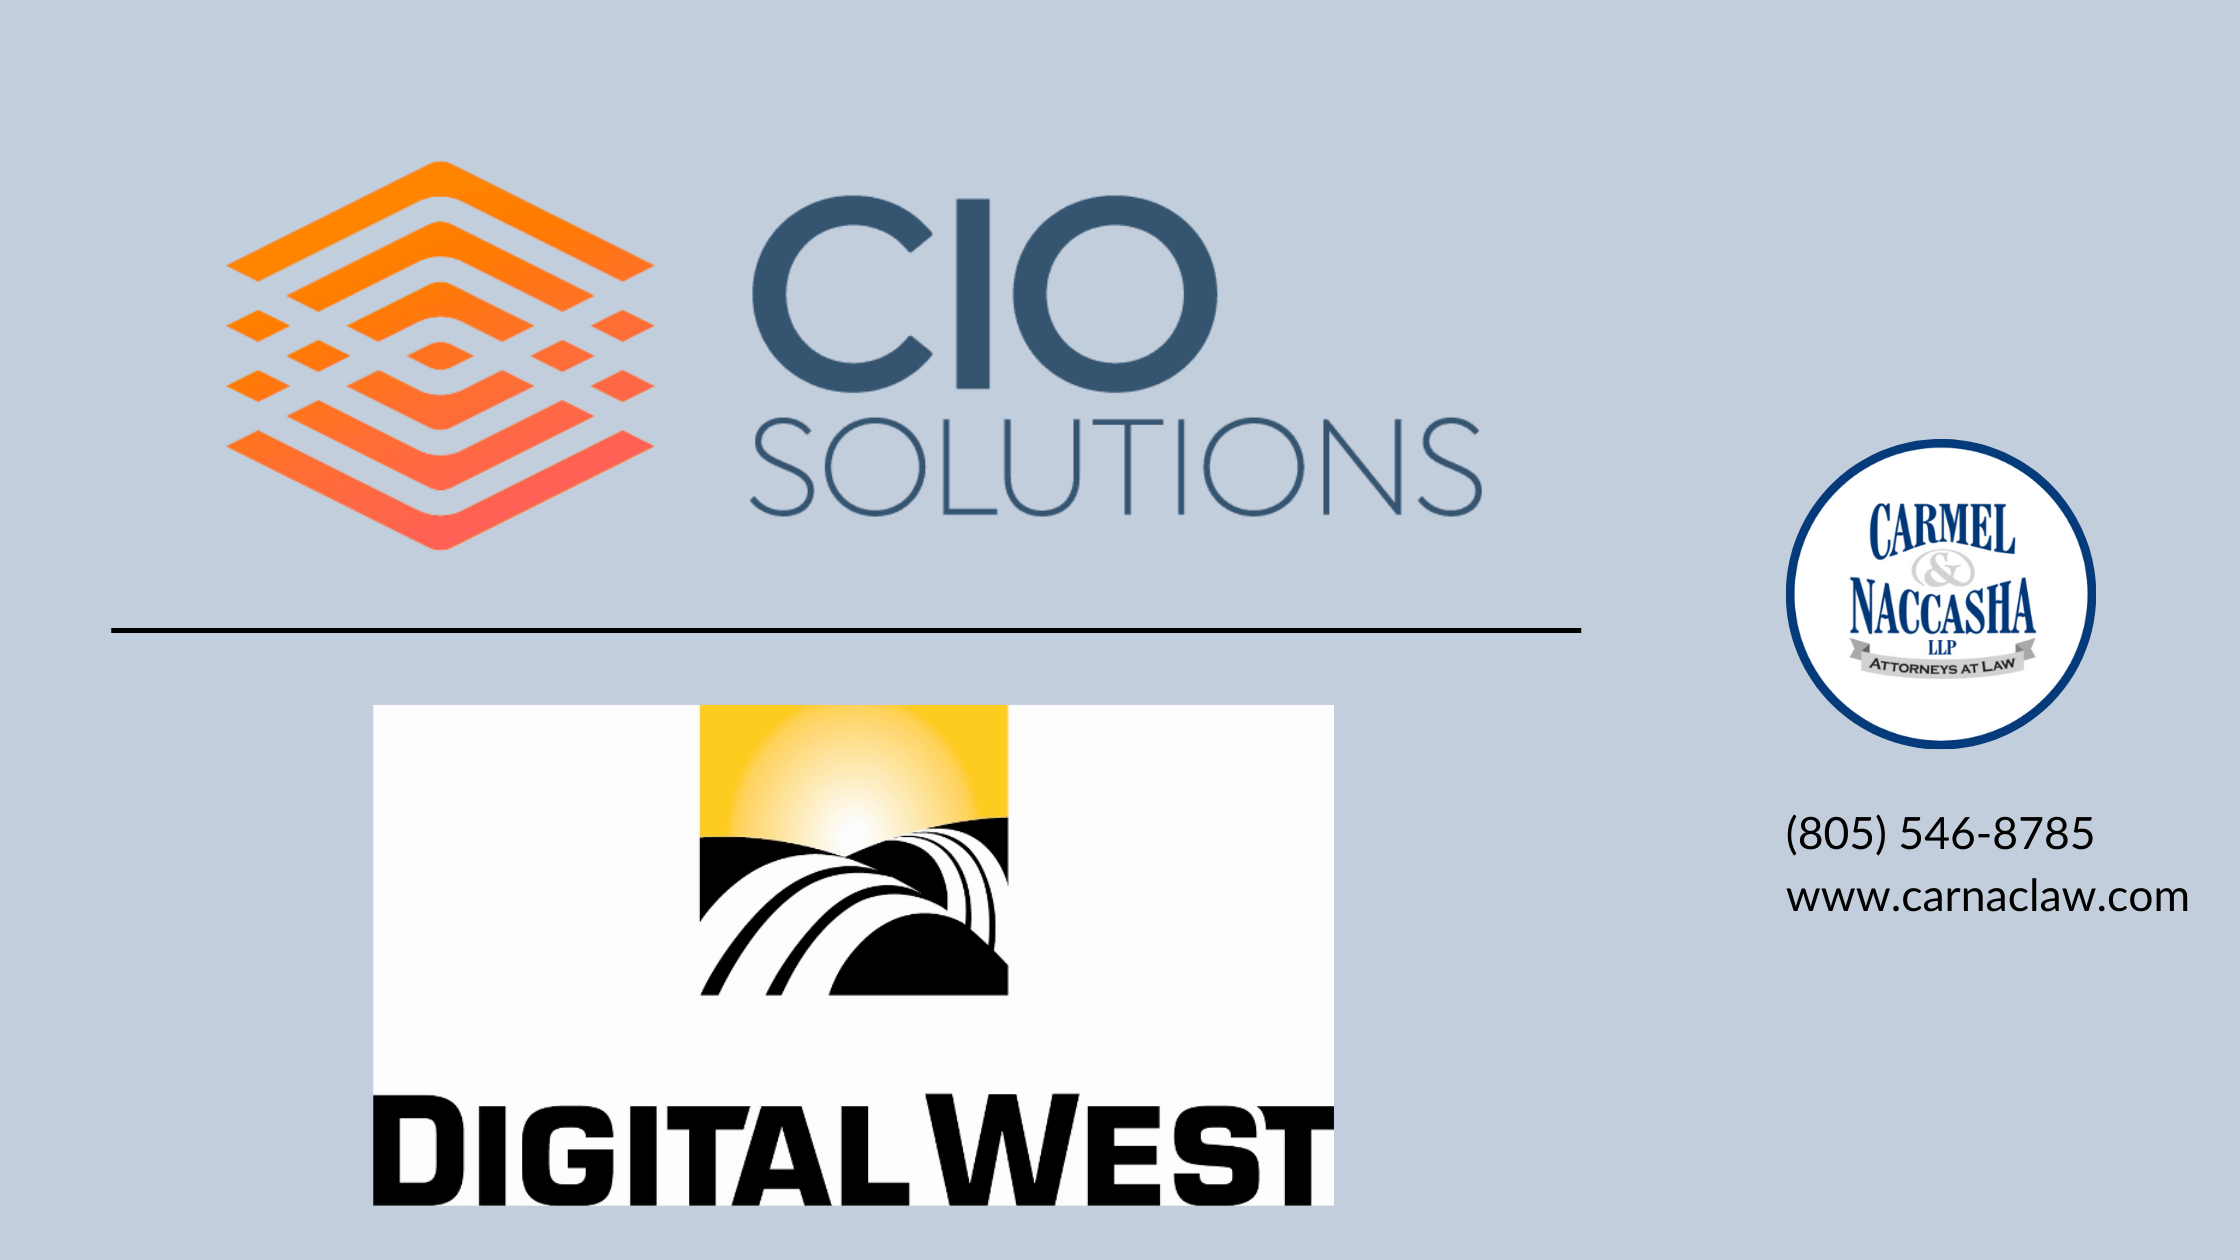 CIO Solutions & Digital West Thank You (1)